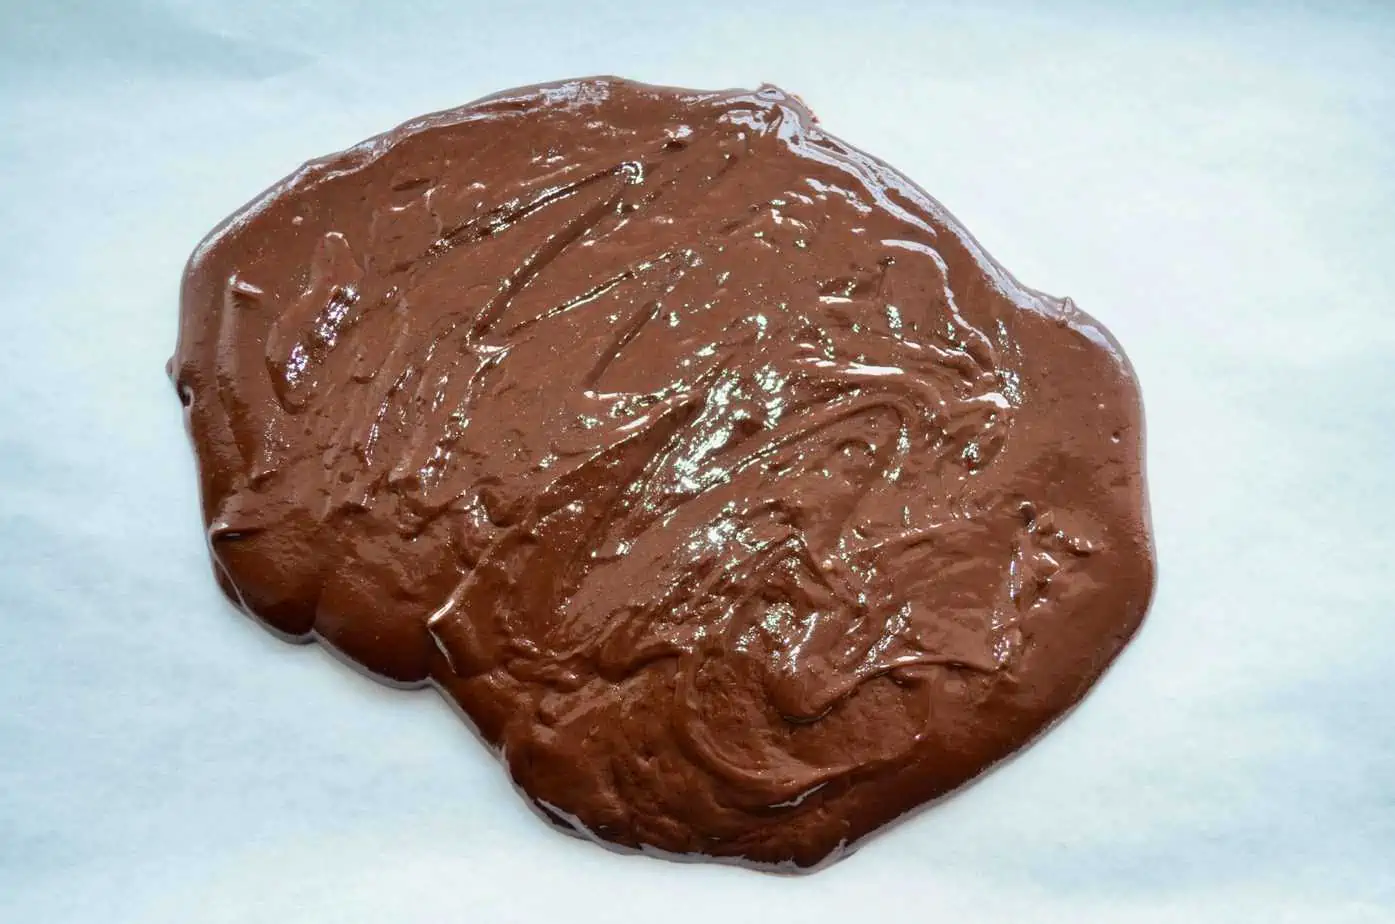 Chocolate poop ingredients